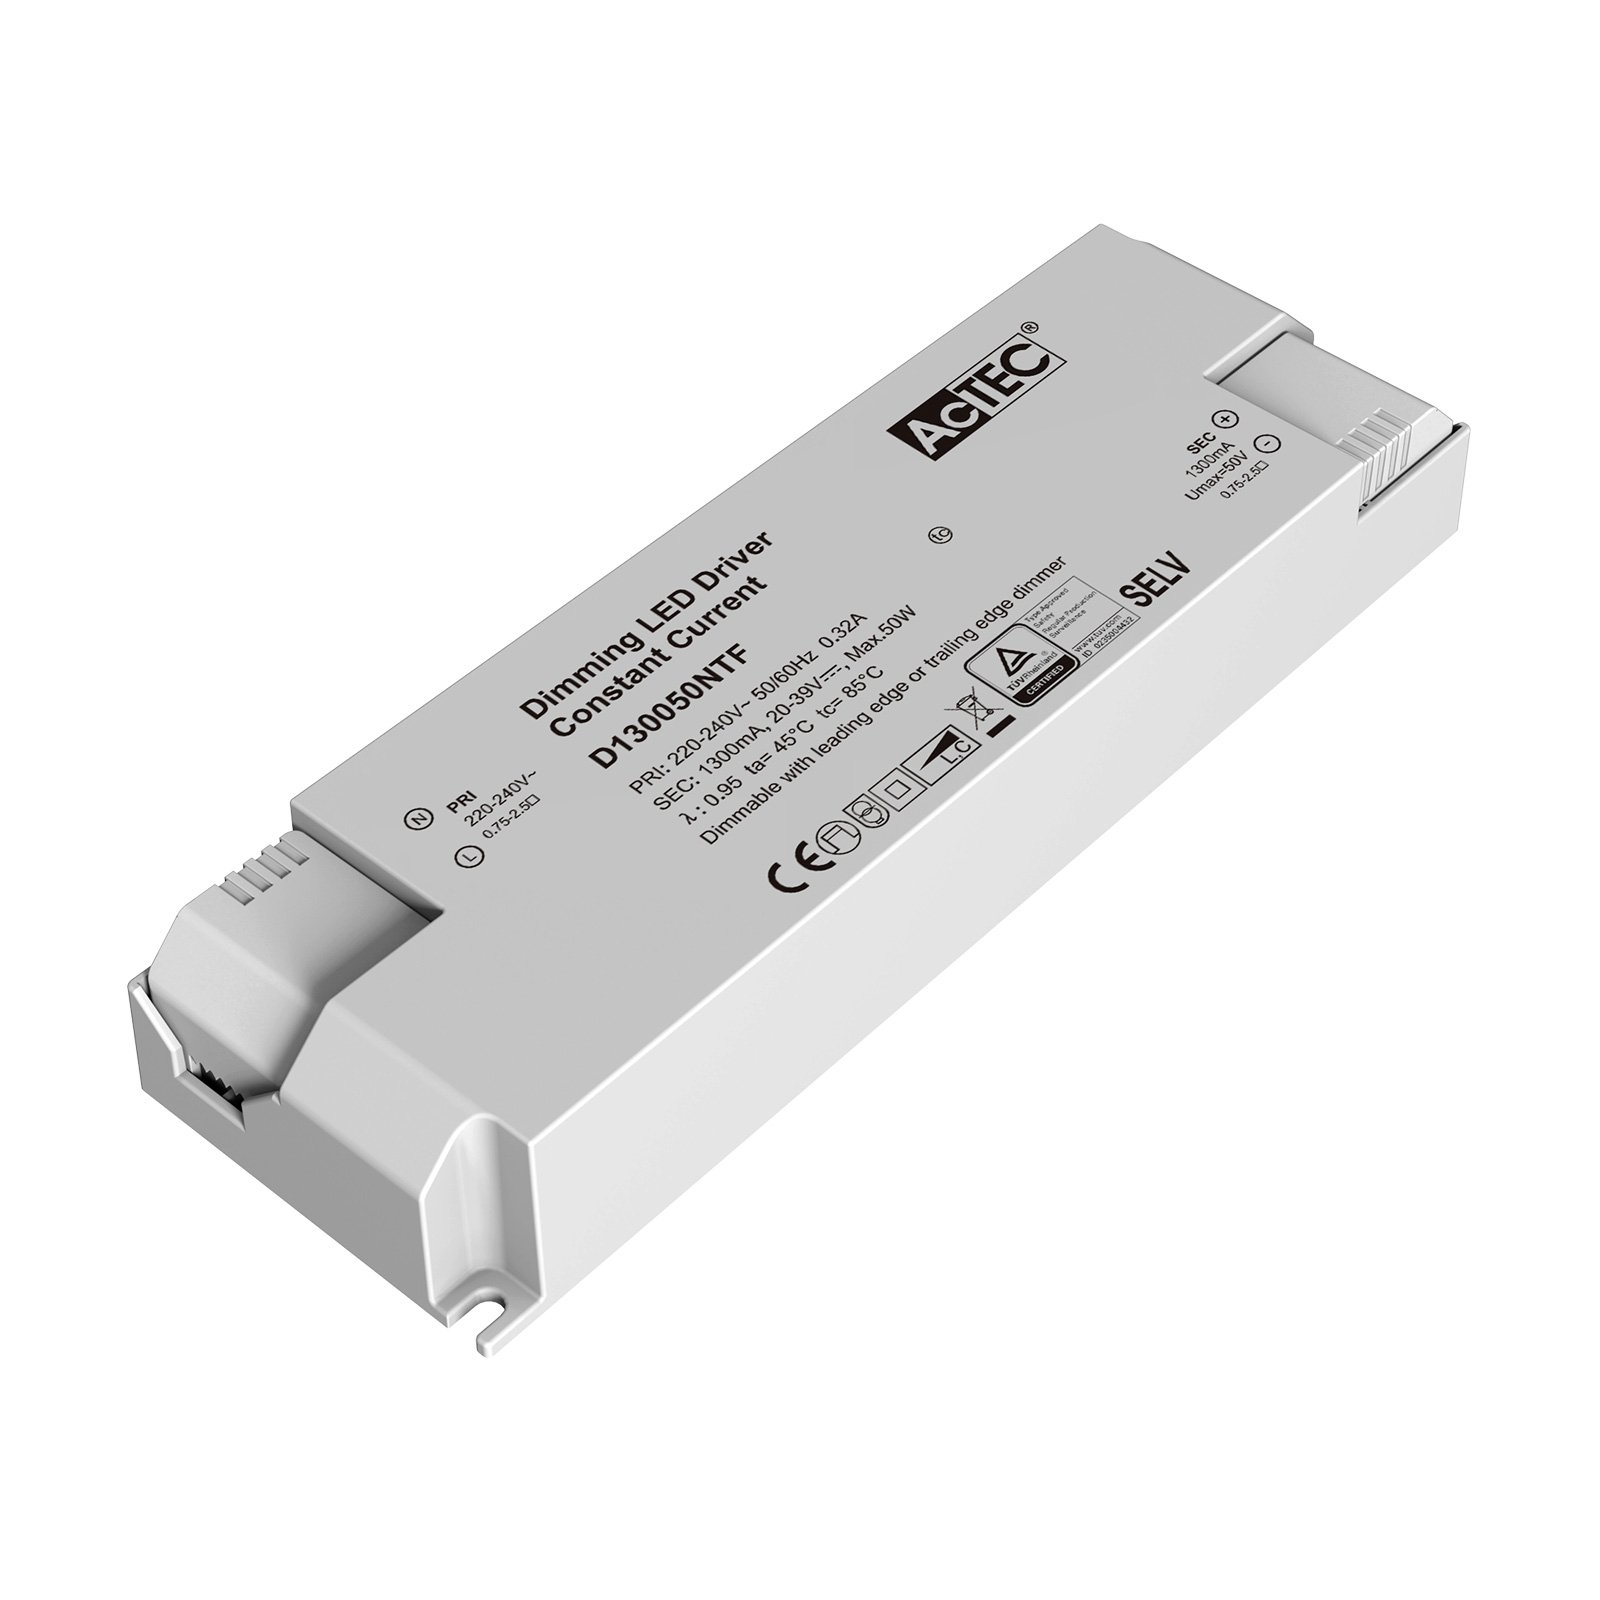 AcTEC Triac -LED-muuntaja CC maks. 50 W 1 300 mA